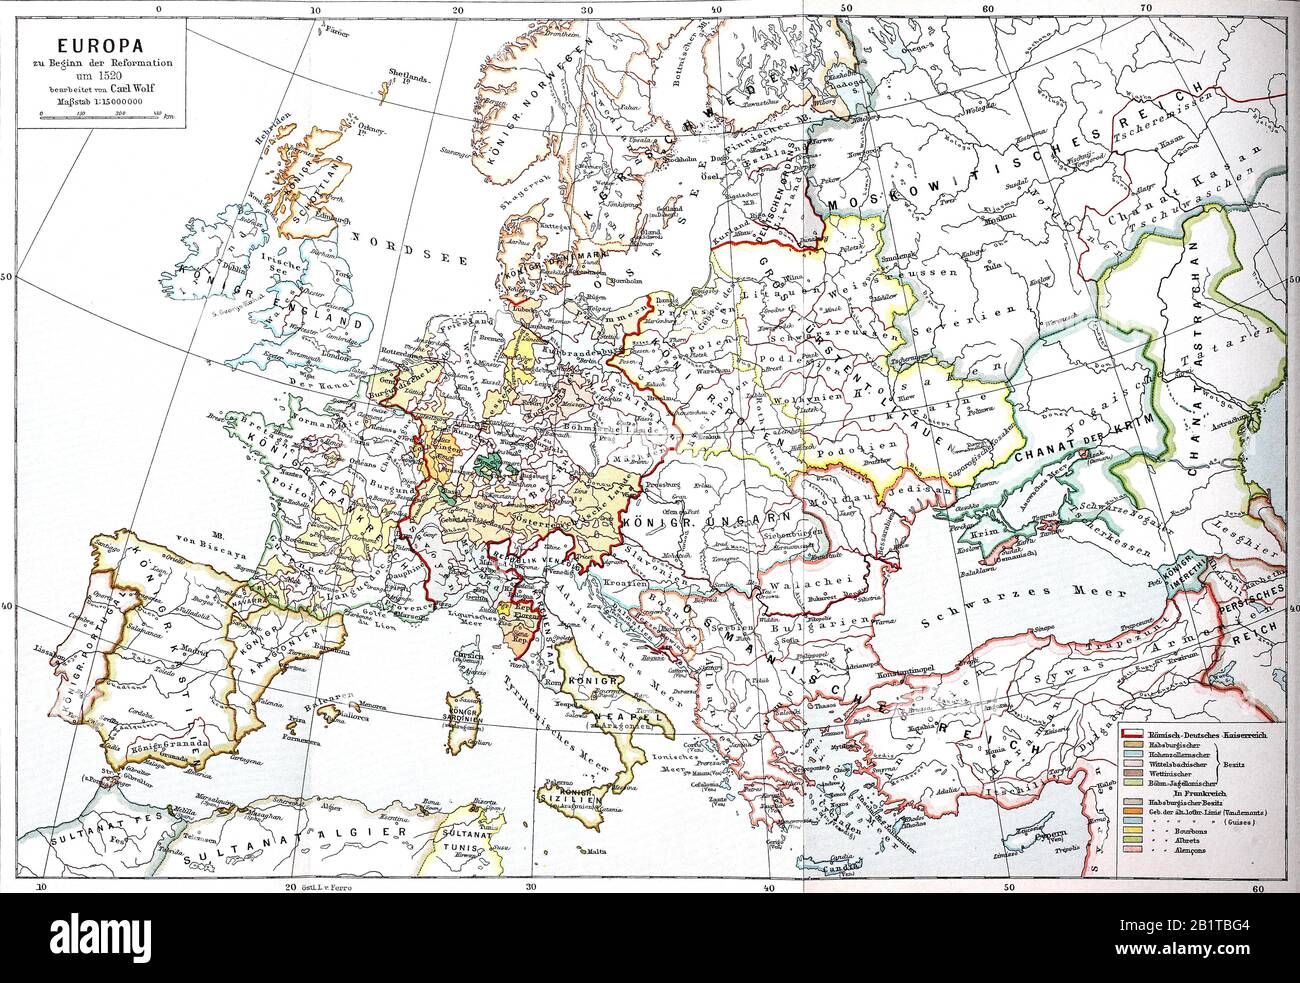 Karte von Europa zu Beginn der Reformation um 1520 / Landkarte von Europa zu Beginn der Reformation um 1520, historisch, digital verbesserte Wiedergabe eines Originals aus dem 19. Jahrhundert / Digitale Produktion einer Originalanlage aus dem 19. Jahrhunderts Stockfoto